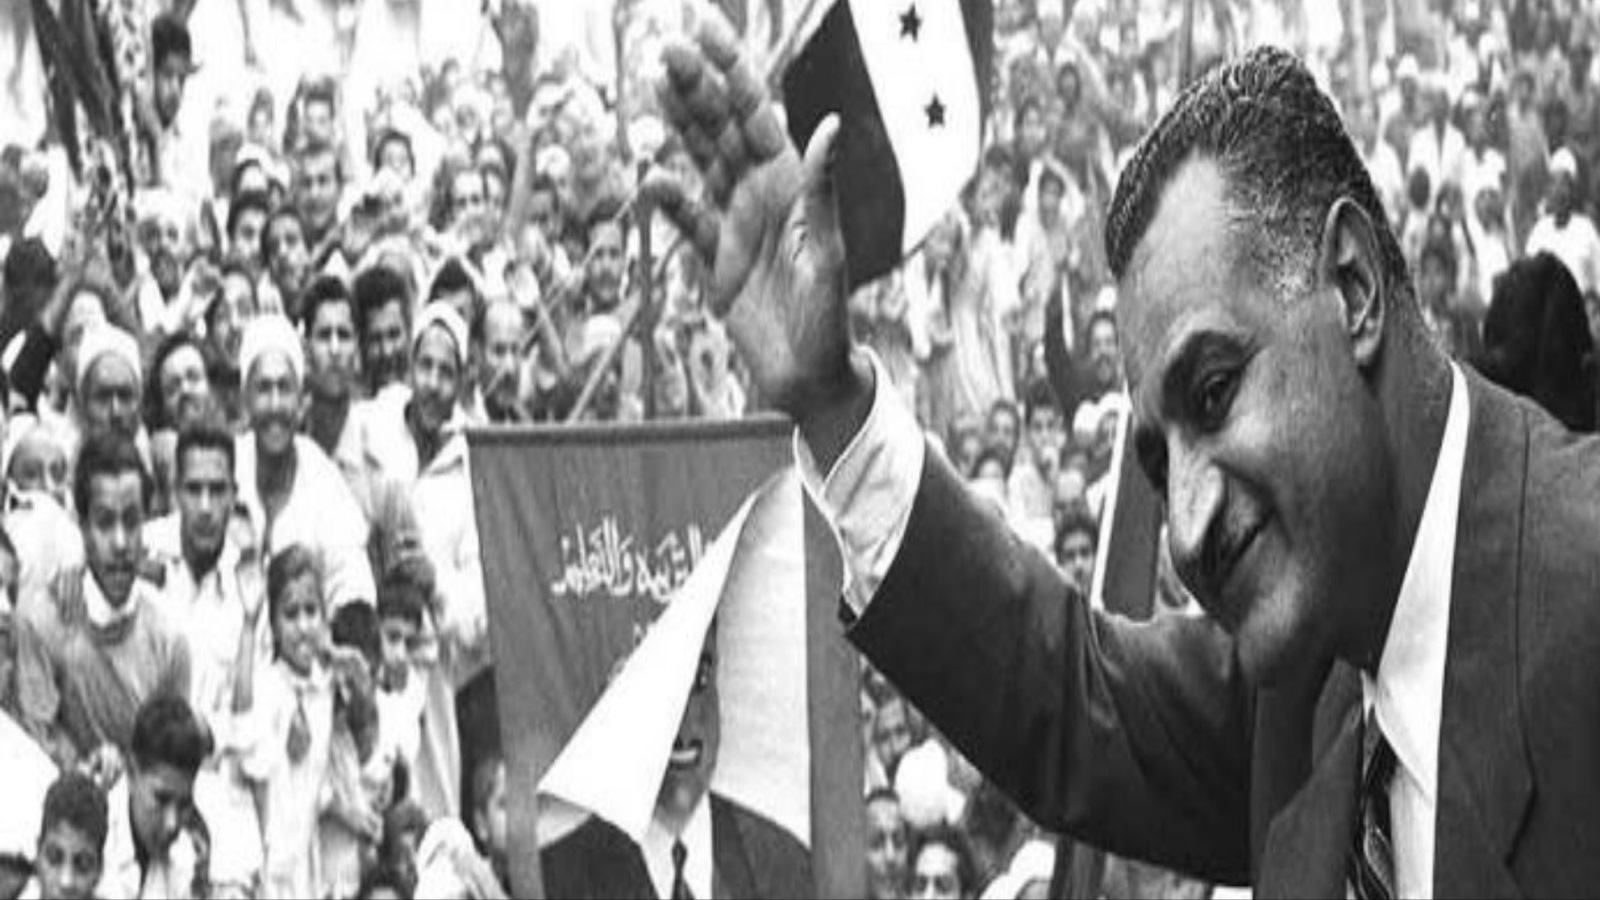 نعرف أن عبد الناصر كان مع اليونان ضد تركيا في قبرص، لكن المفاجأة التي لا يعرفها الناس لأنها غُيٌبت عنهم أن إسرائيل كانت هي الأخرى مع اليونان ضد تركيا.. وهكذا اصطفٌ الرئيس عبد الناصر للمرة الثانية مع إسرائيل